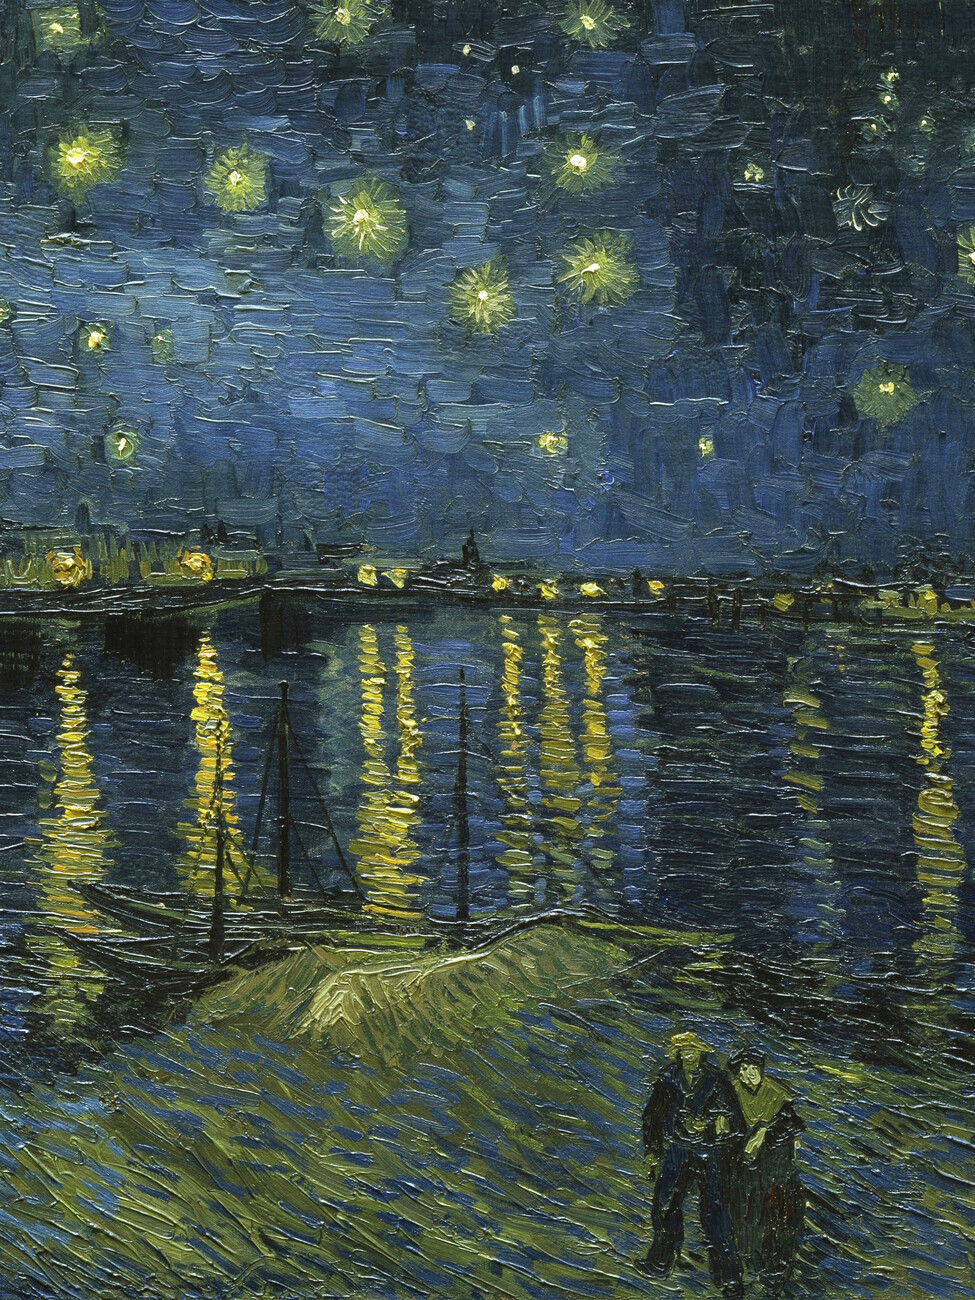 Reprodução do quadro Starry Night over the Rhone (Portrait Edition) - Vincent van Gogh